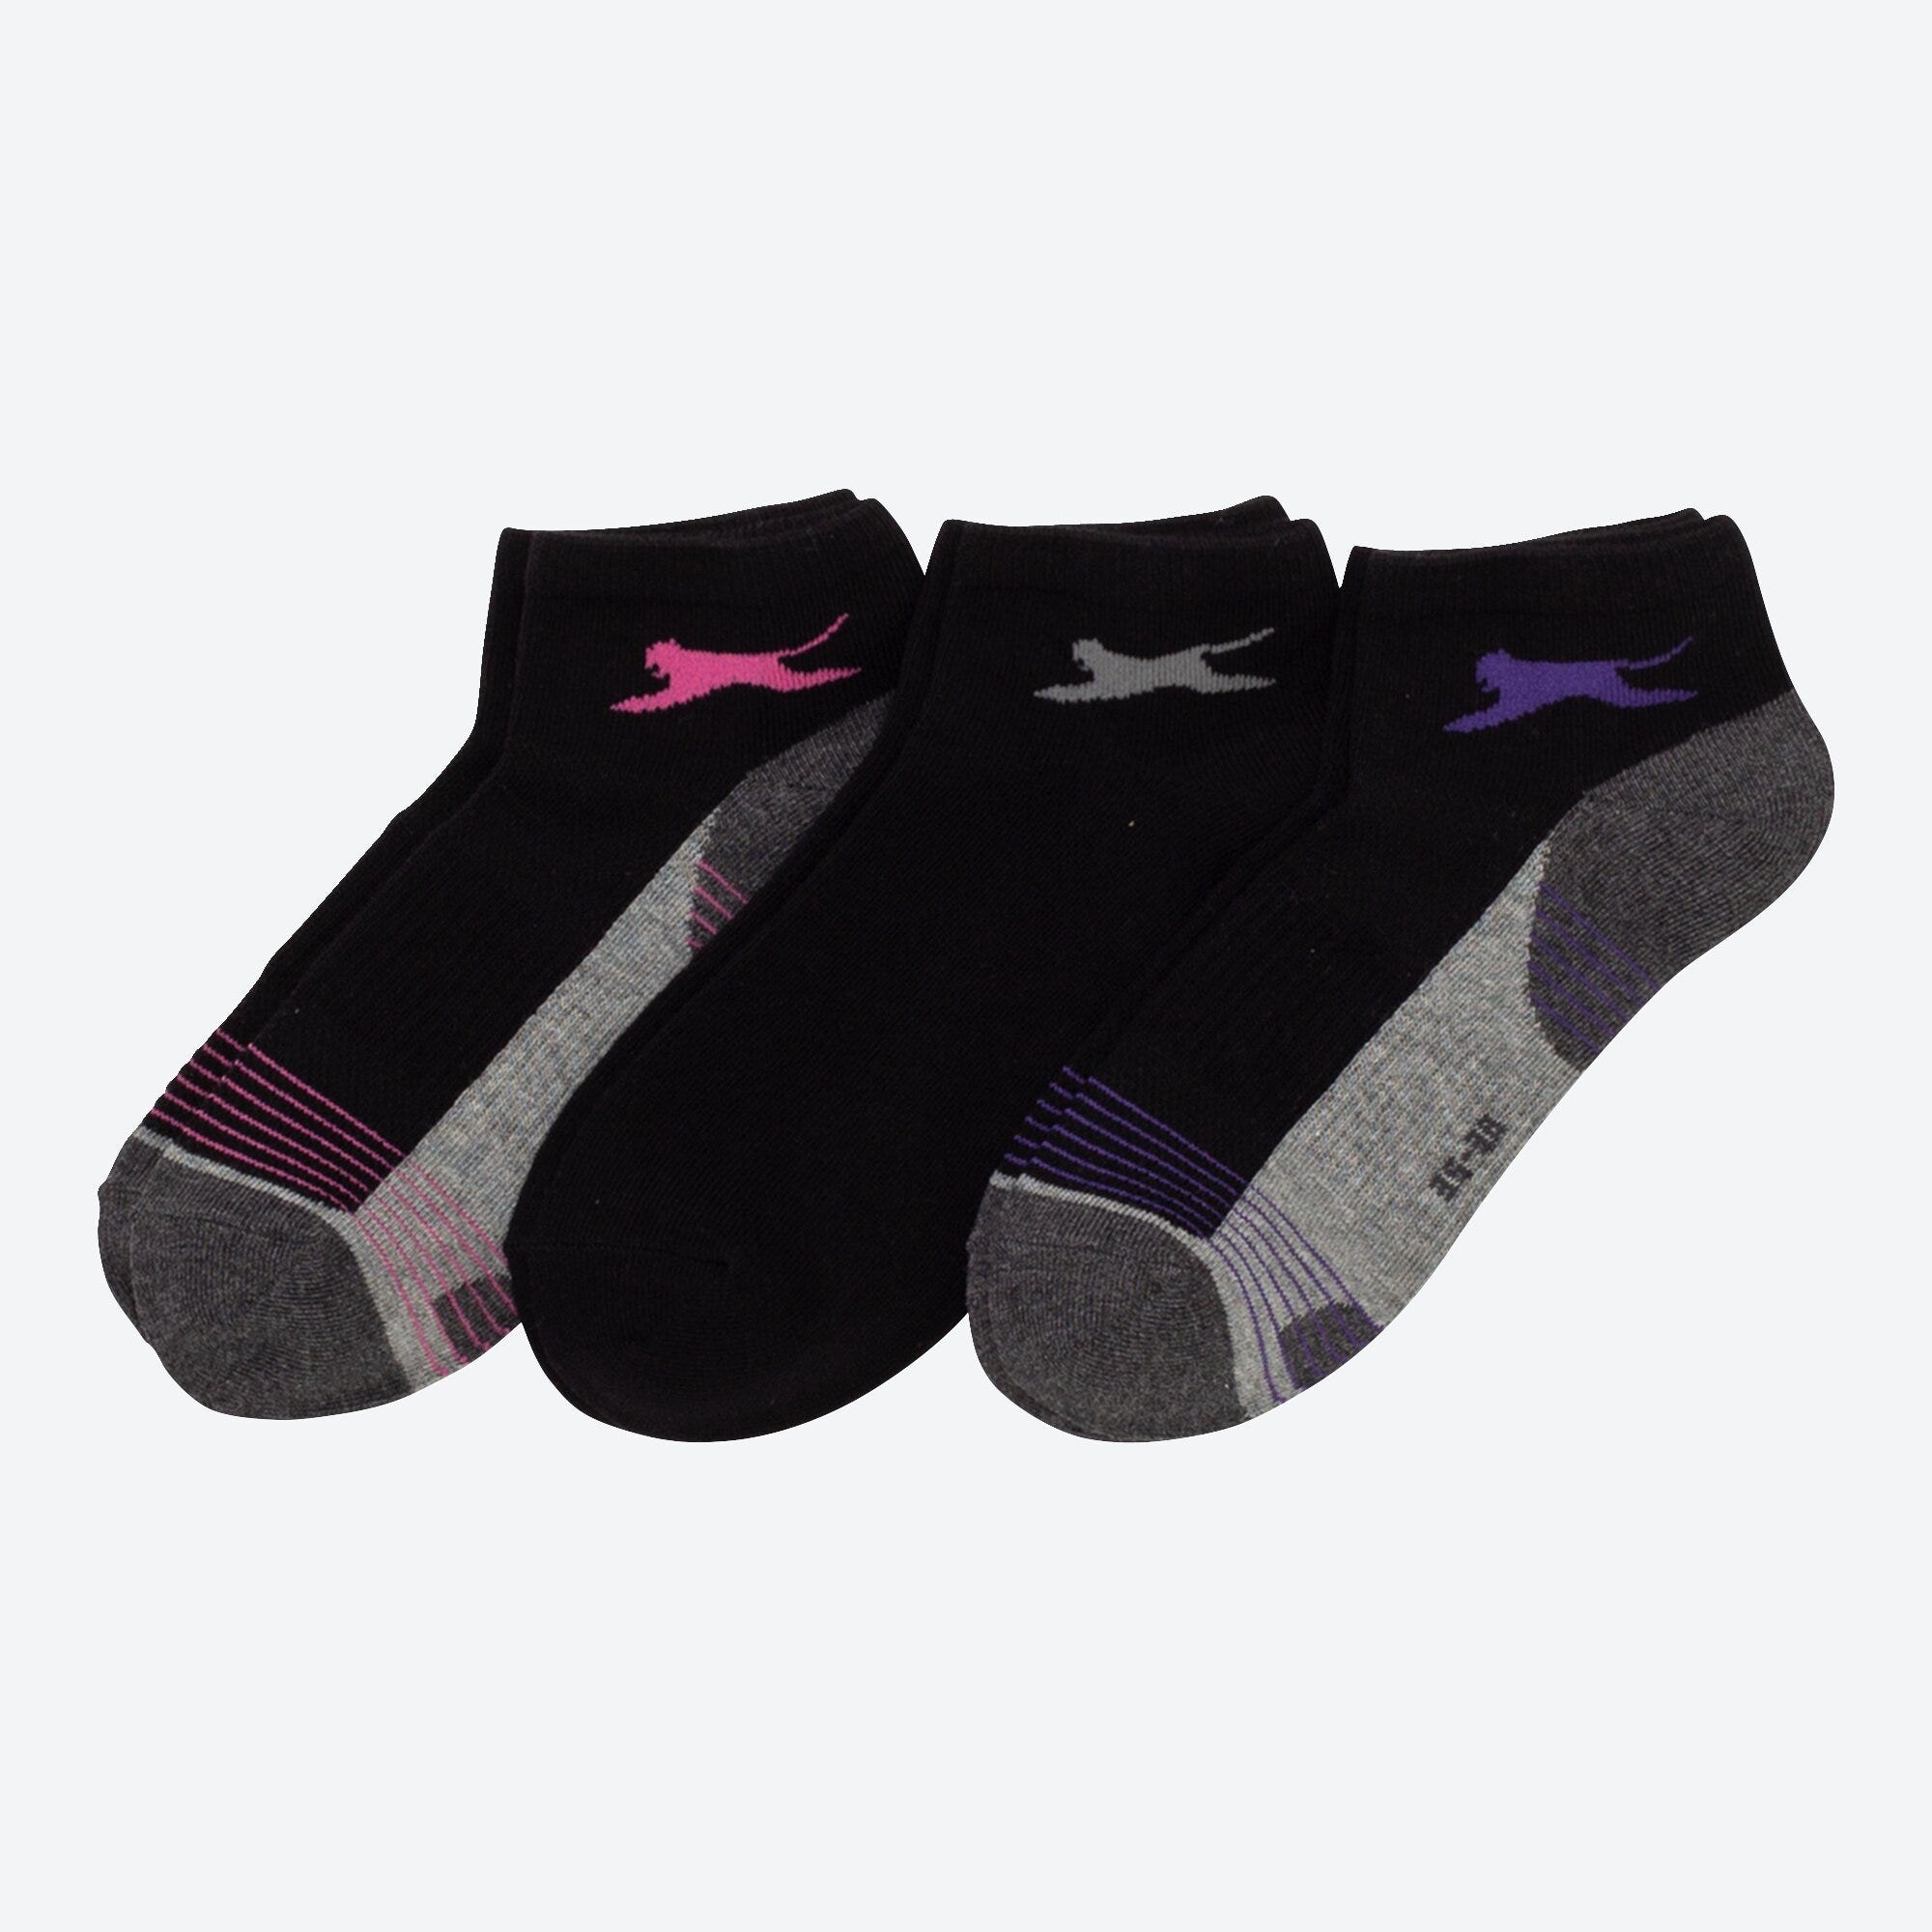 Slazenger Damen-Sport-Sneaker-Socken, 3er-Pack